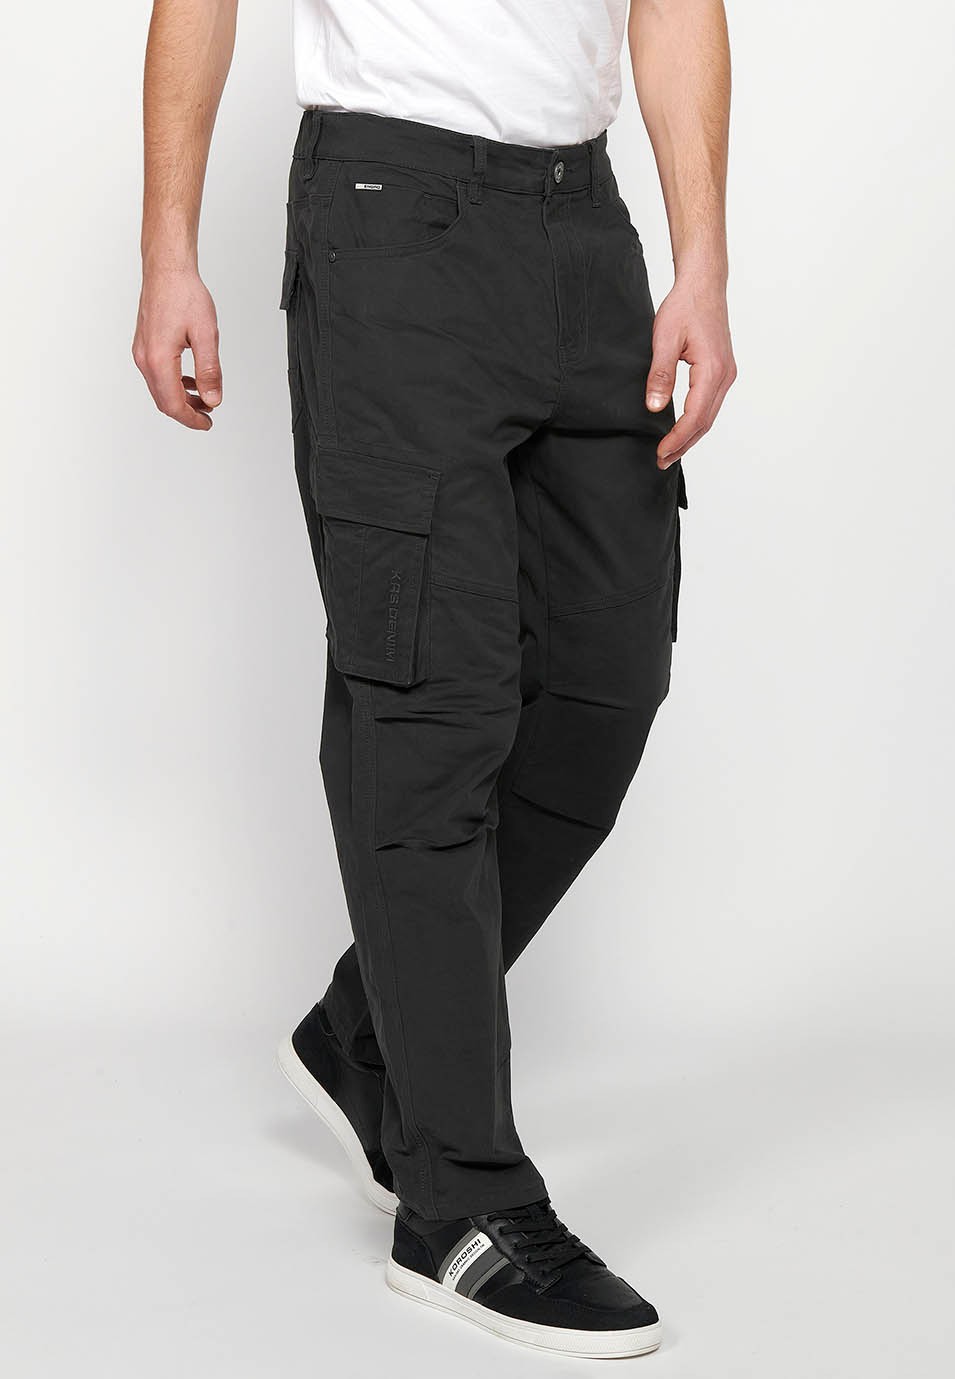 Pantalons llarg càrrec amb Tancament davanter amb cremallera i botó amb Butxaques laterals amb solapa de Color Negre per a Home